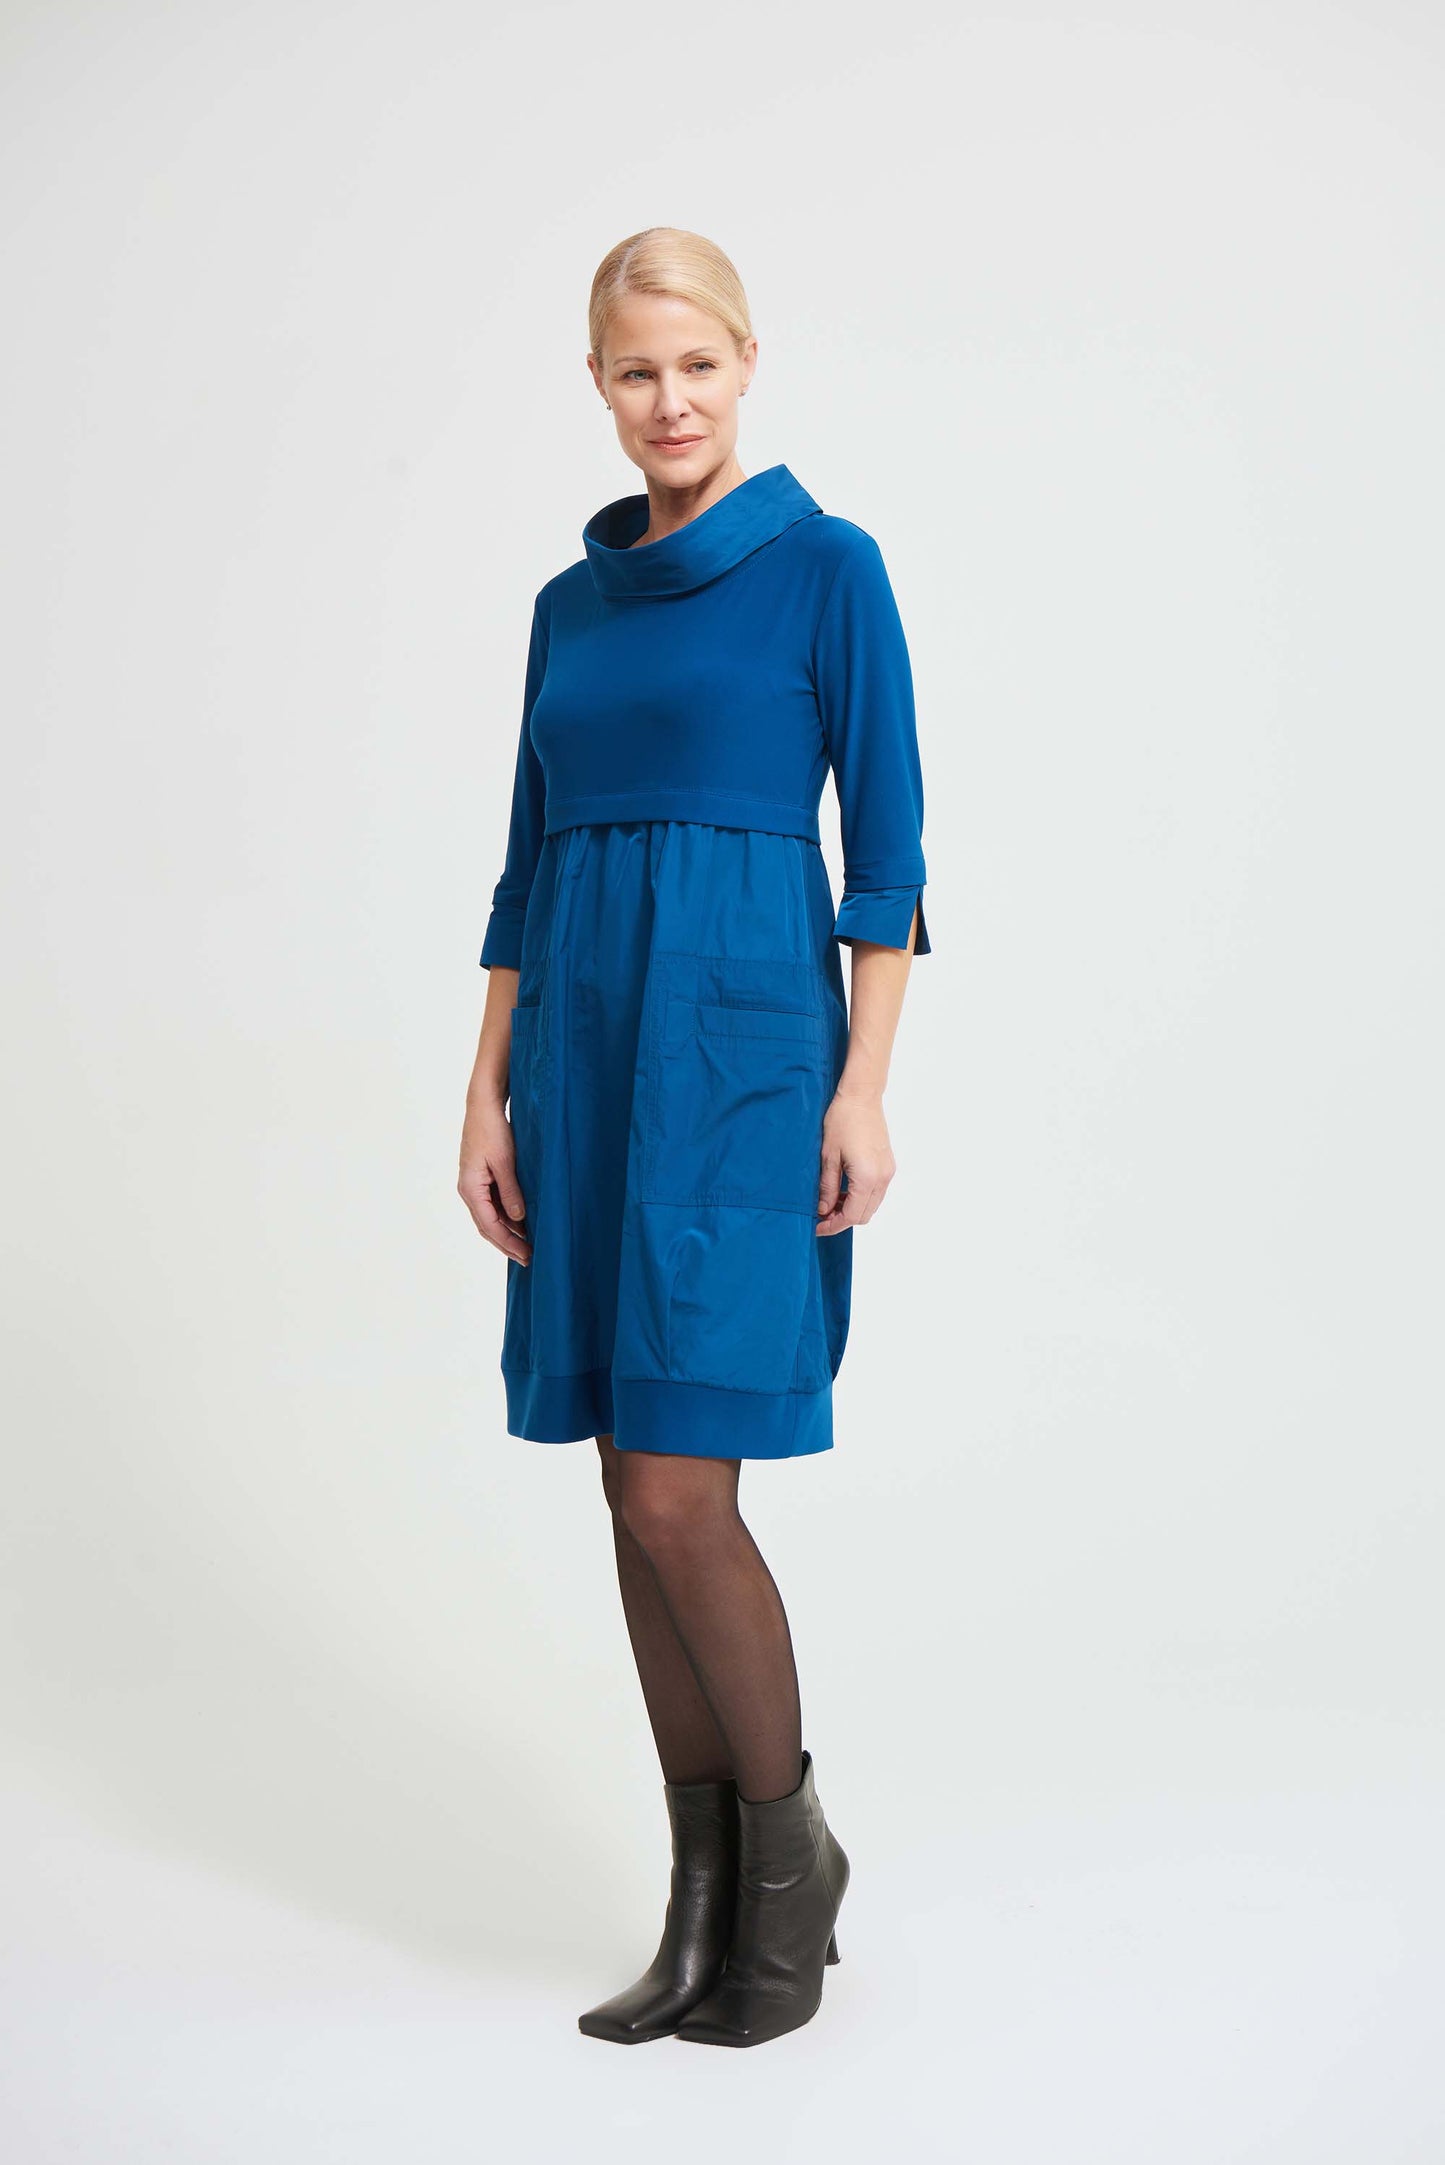 Joseph Ribkoff - Dress/Tunic Style 173444 1 x size 16 left